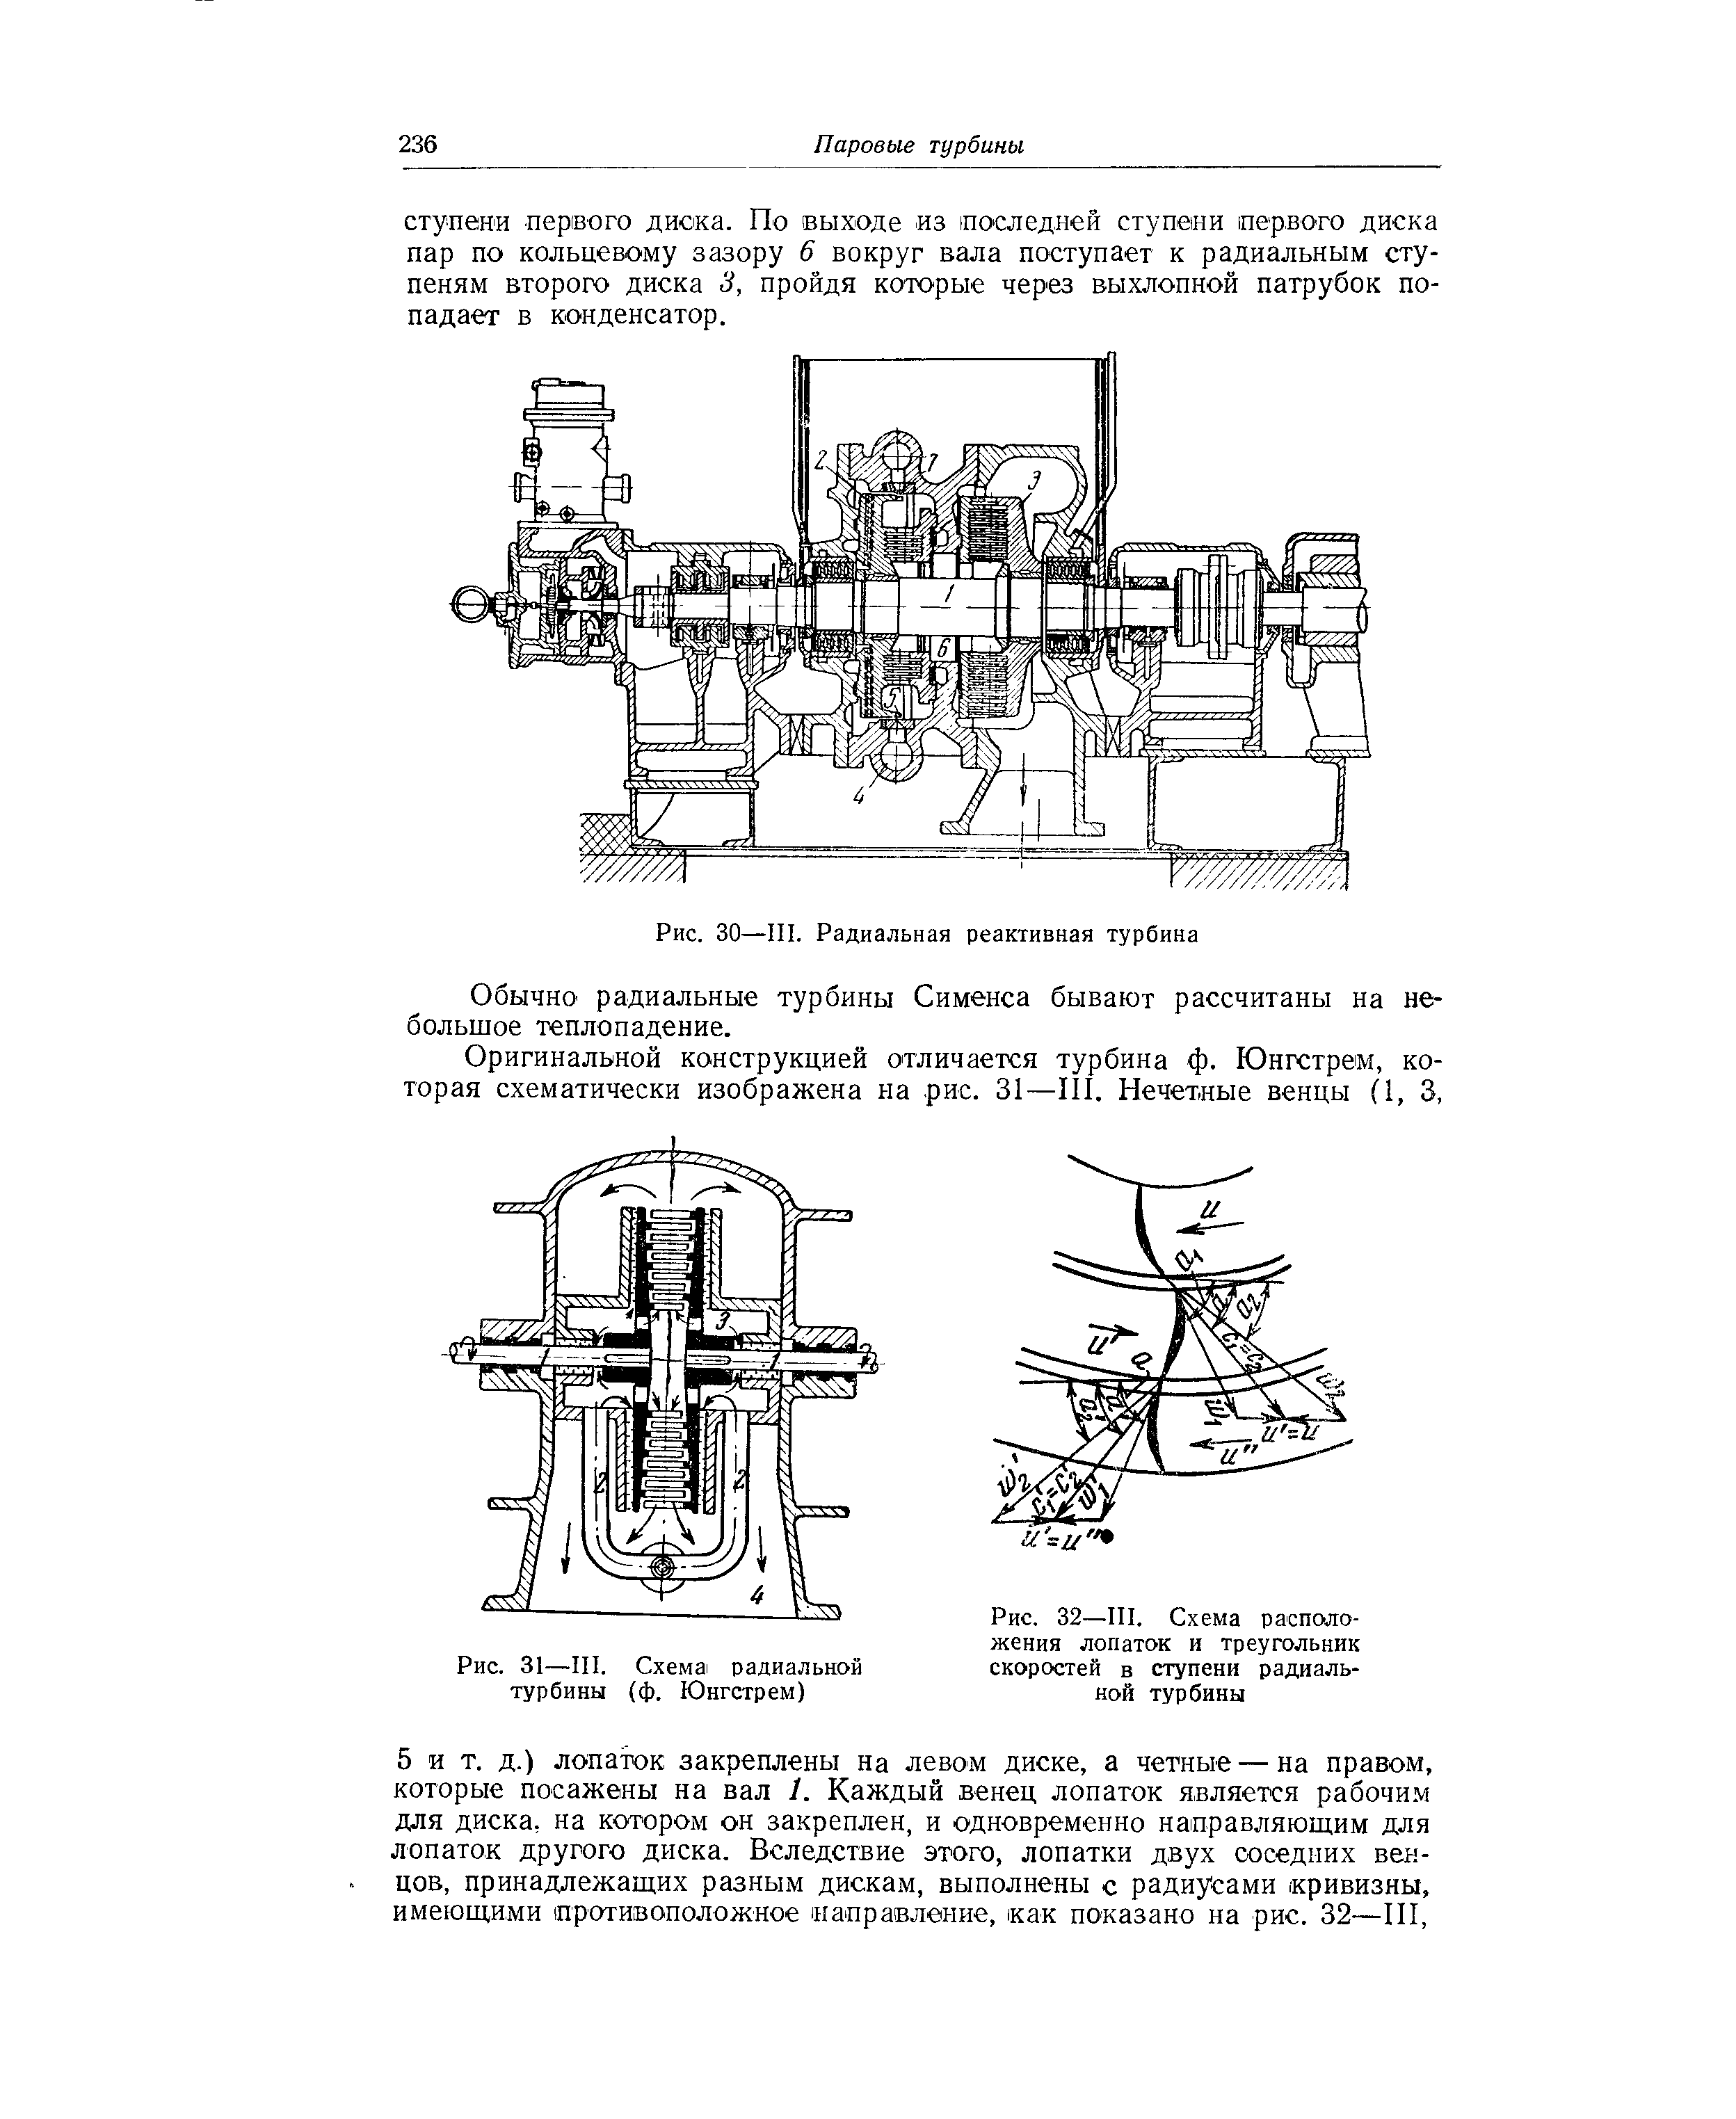 Рис. 31—III. Схема радиальной турбины (ф. Юнгстрем)
